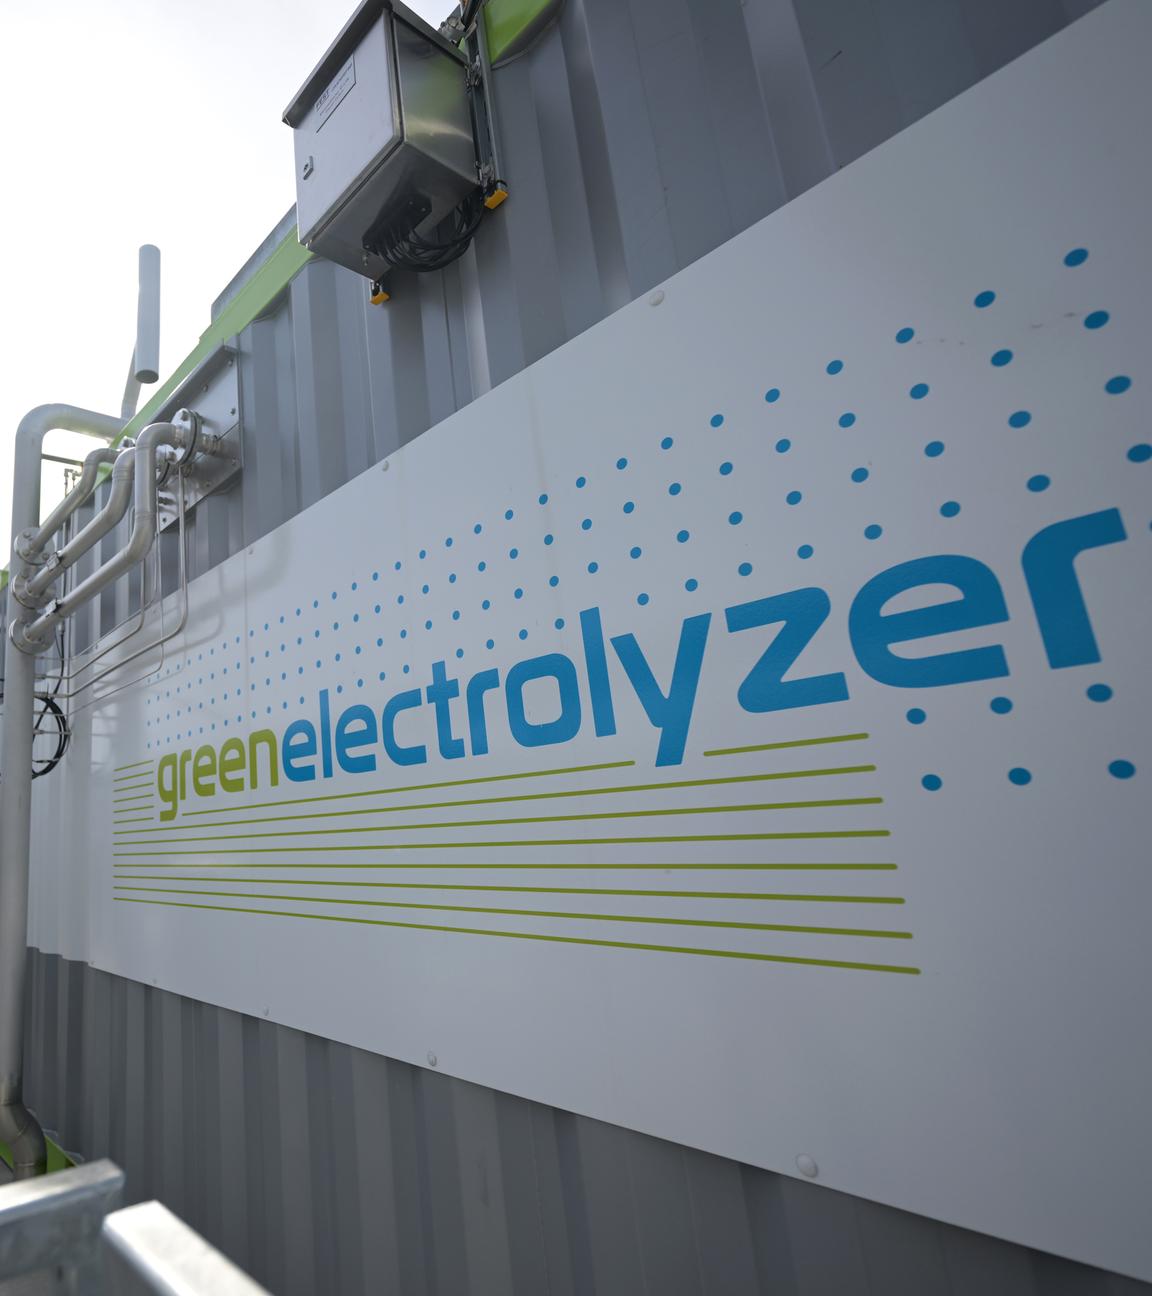 Erzeugungsanlage für Wasserstoff mit der Aufschrift "greenelectrolyzer"